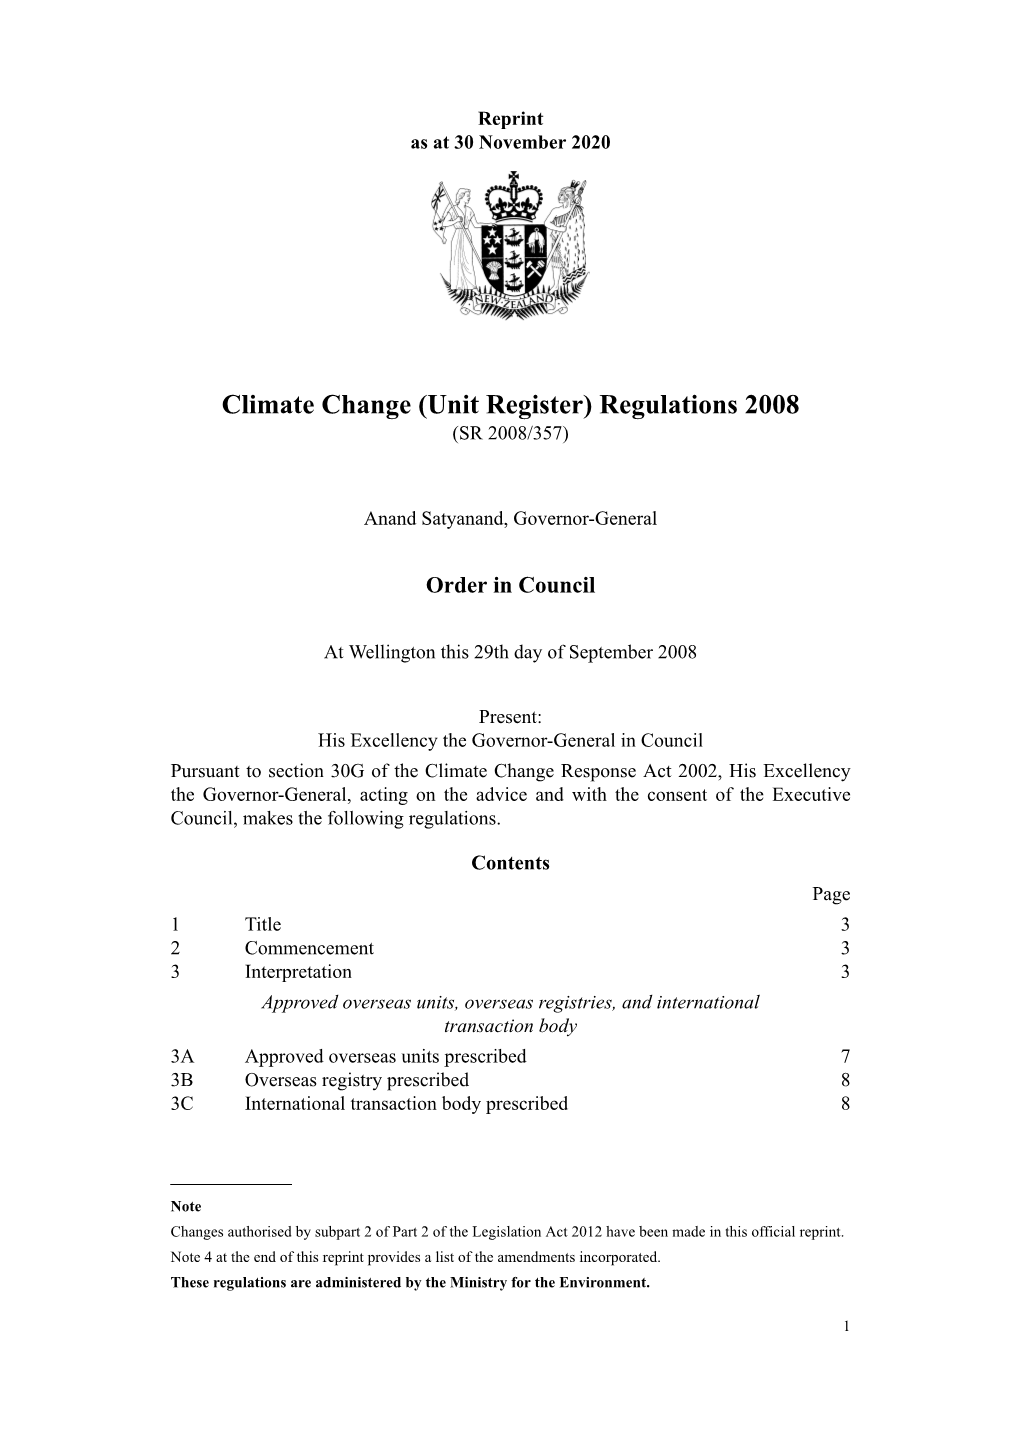 Climate Change (Unit Register) Regulations 2008 (SR 2008/357)